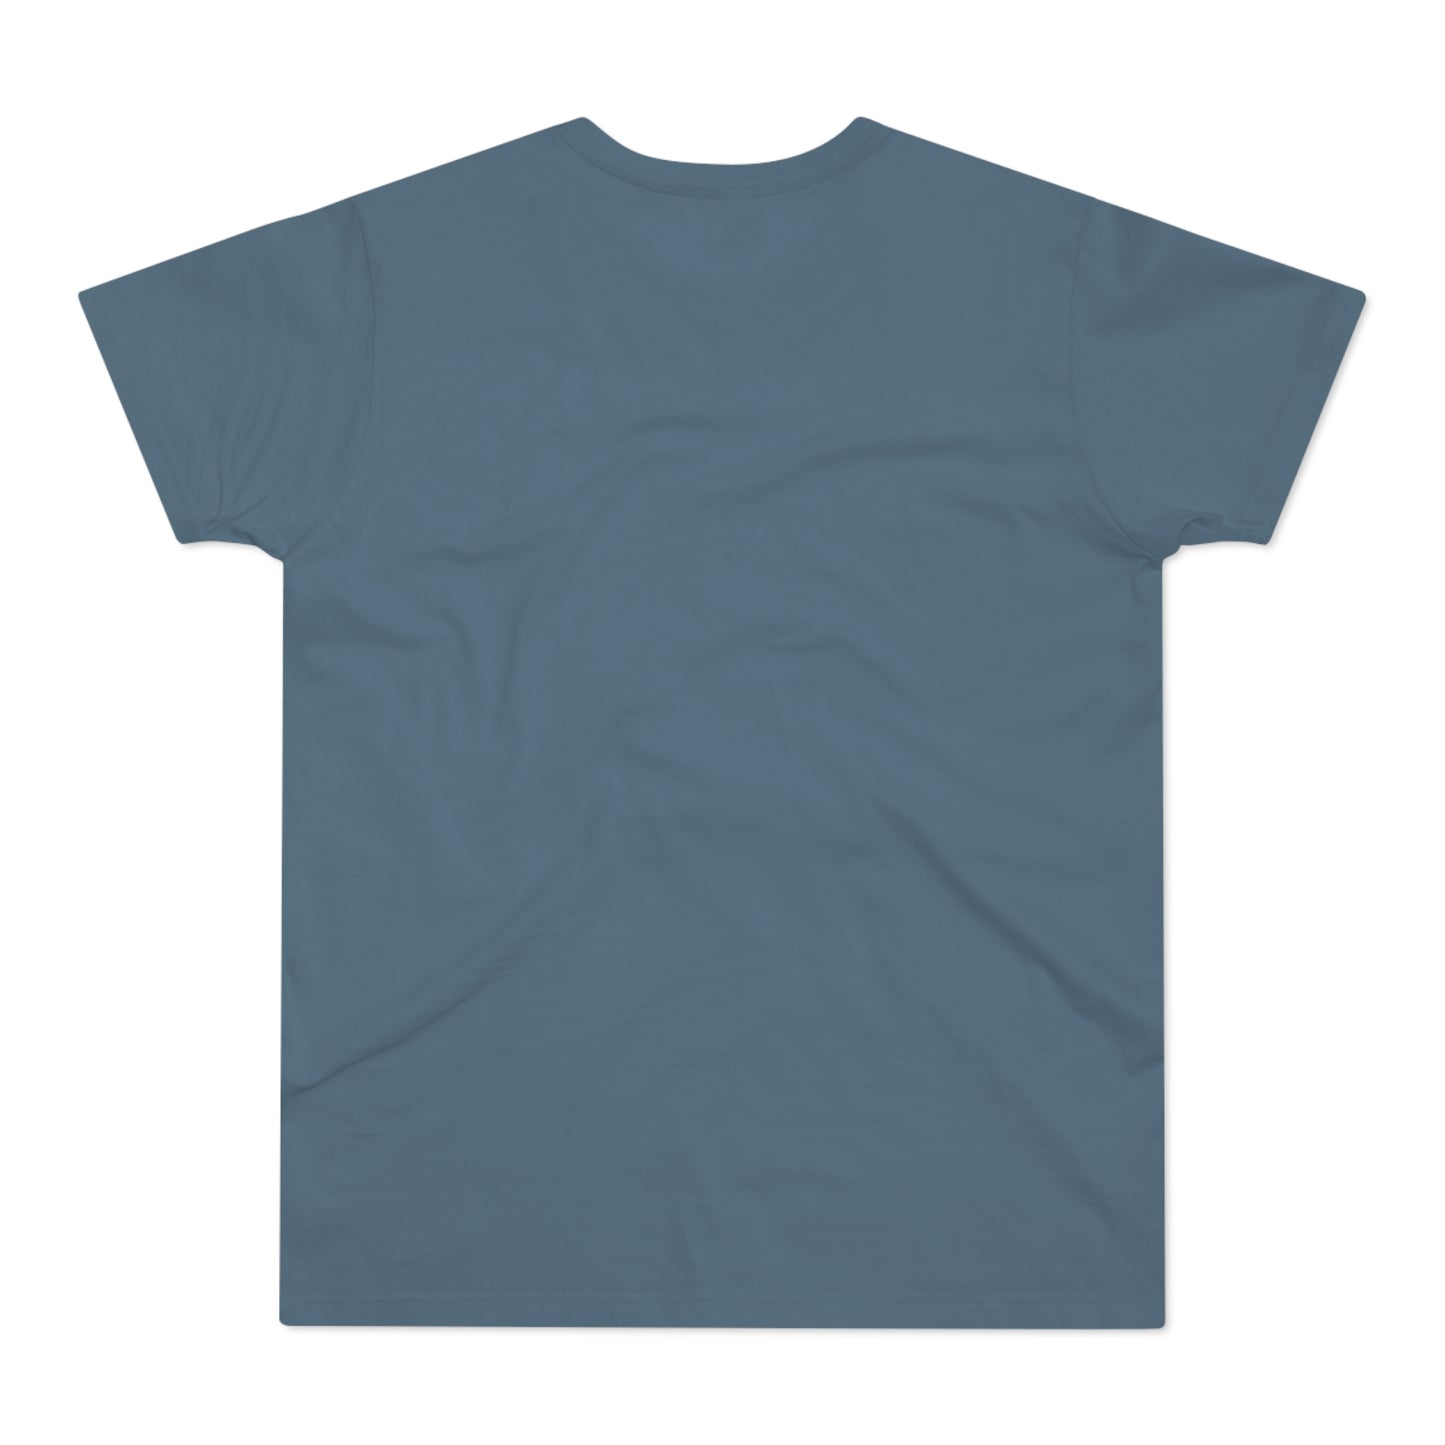 Dragon Pulp Games Single Jersey T-Shirt (Männer)